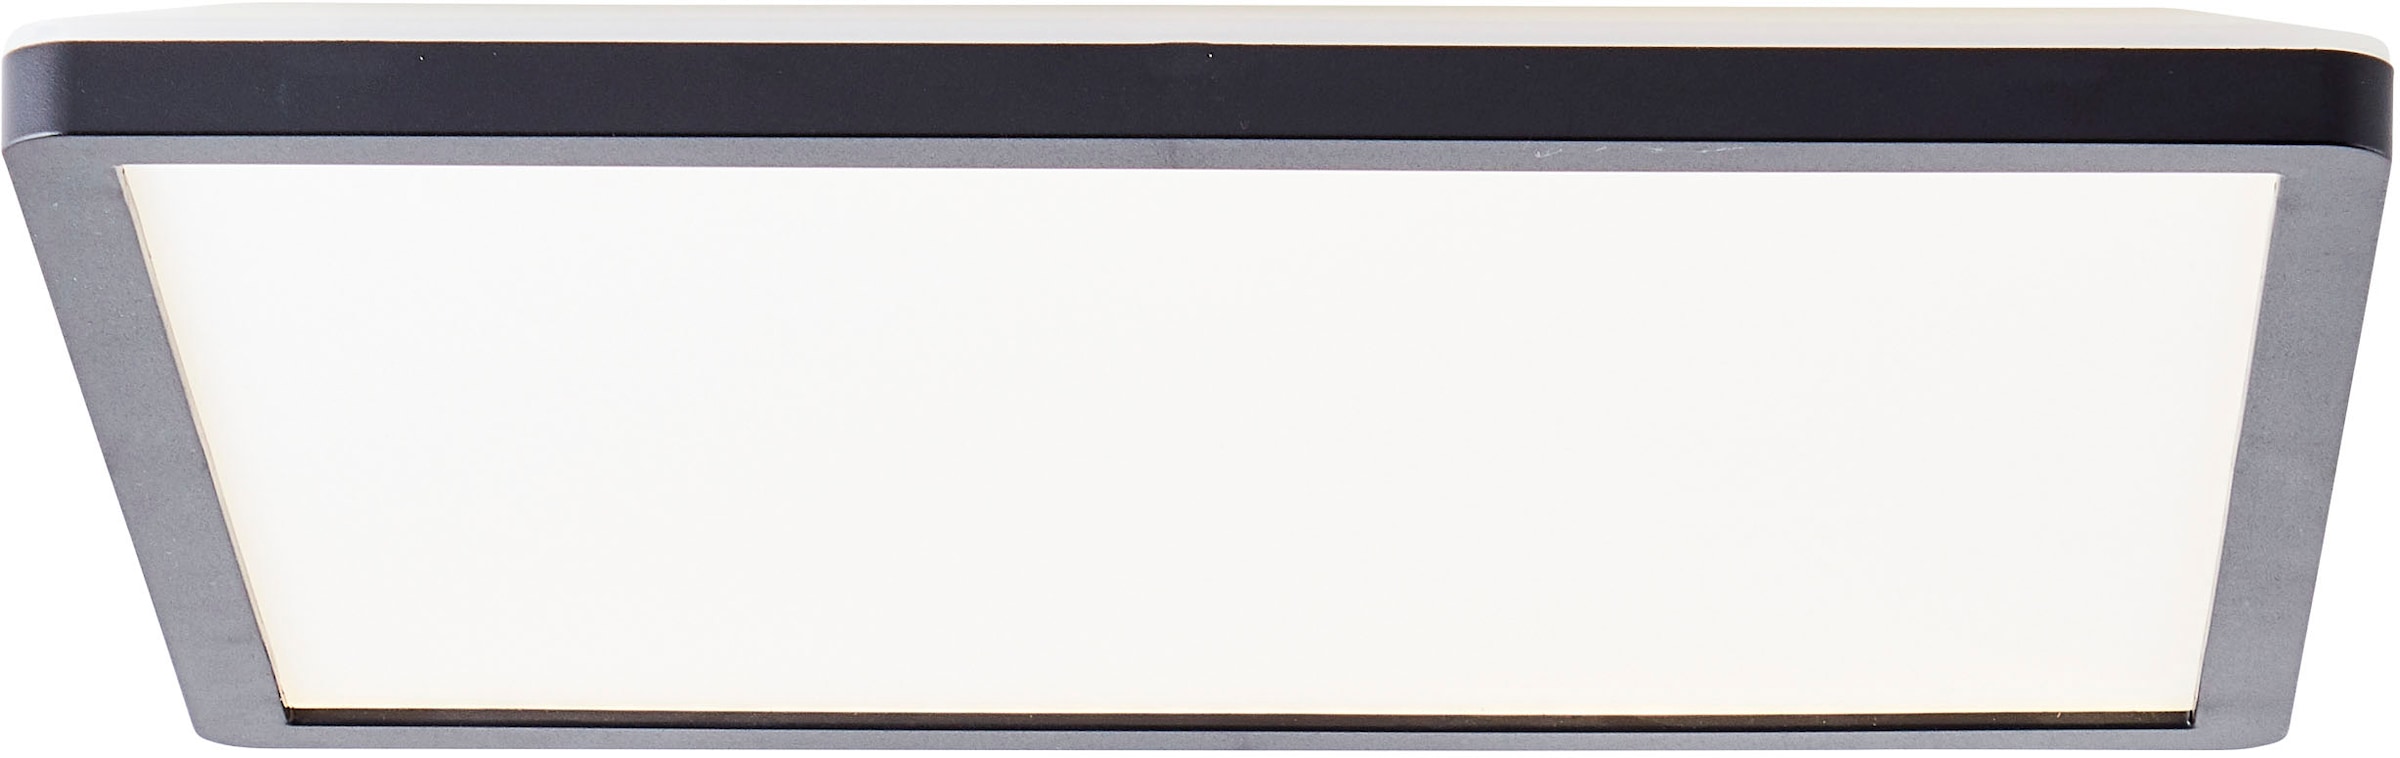 LED Deckenleuchte »Evita«, 29,5 x 29,5 cm, 2400 Lumen, 4000 Kelvin, schwarz/weiß